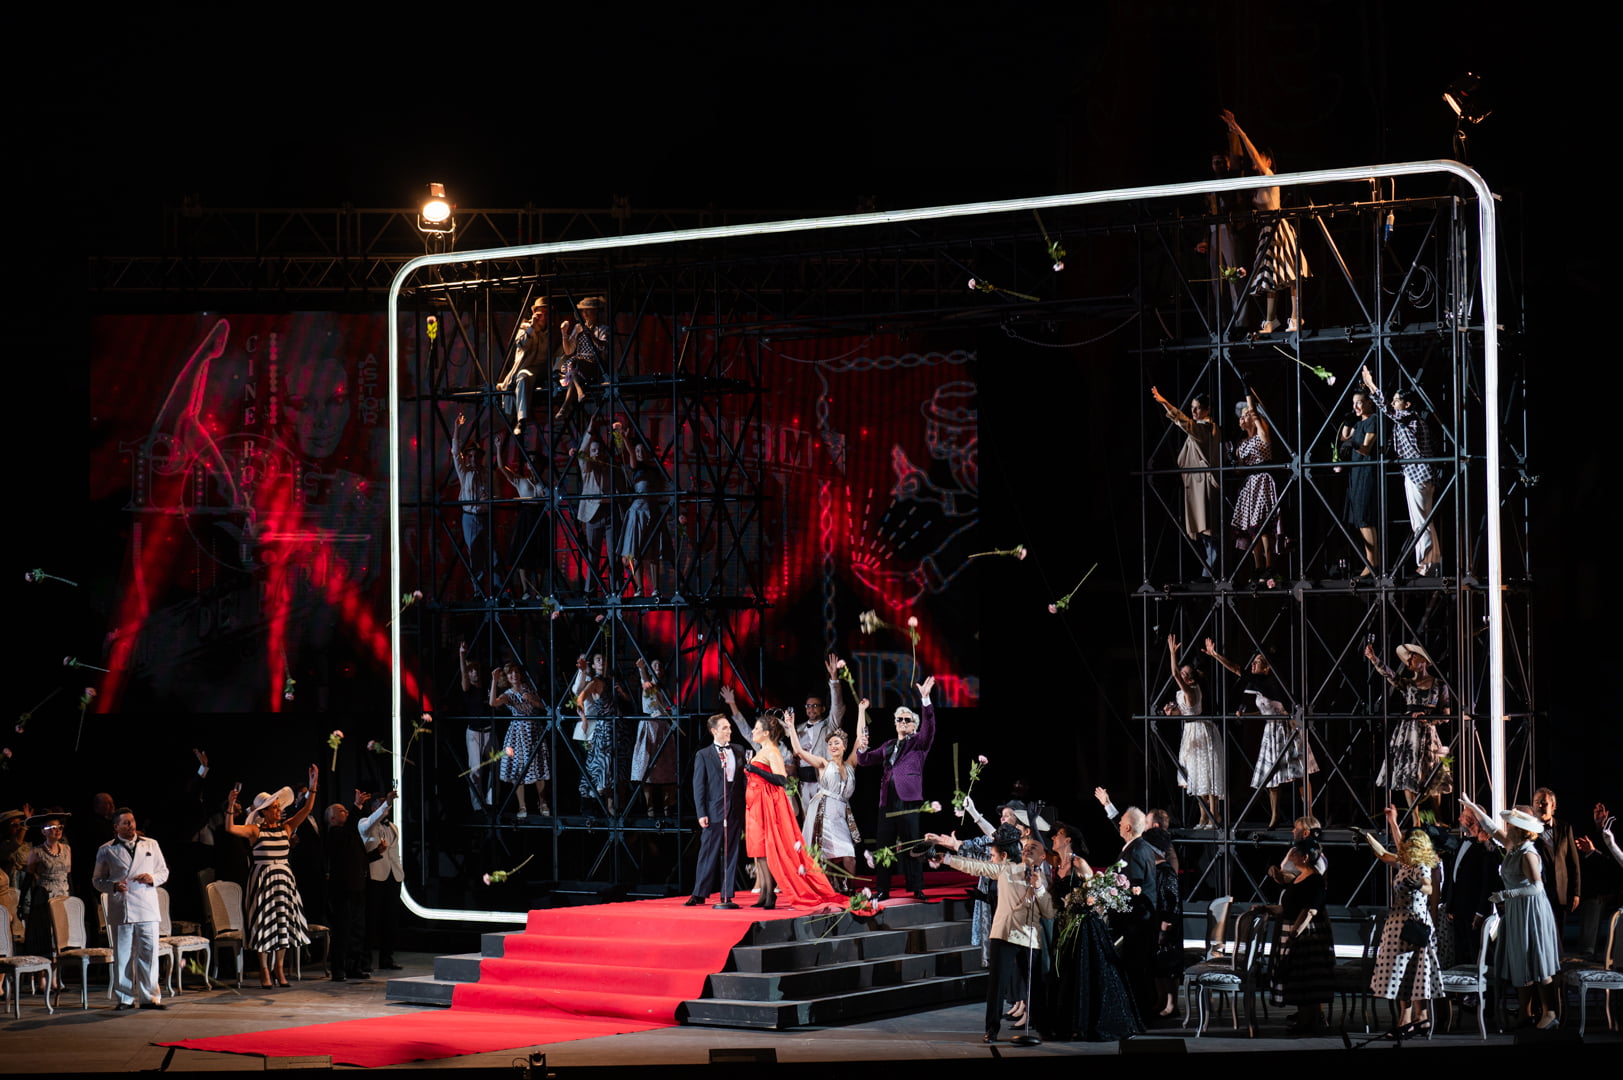 La Traviata - Teatro dell’Opera di Roma (italian)